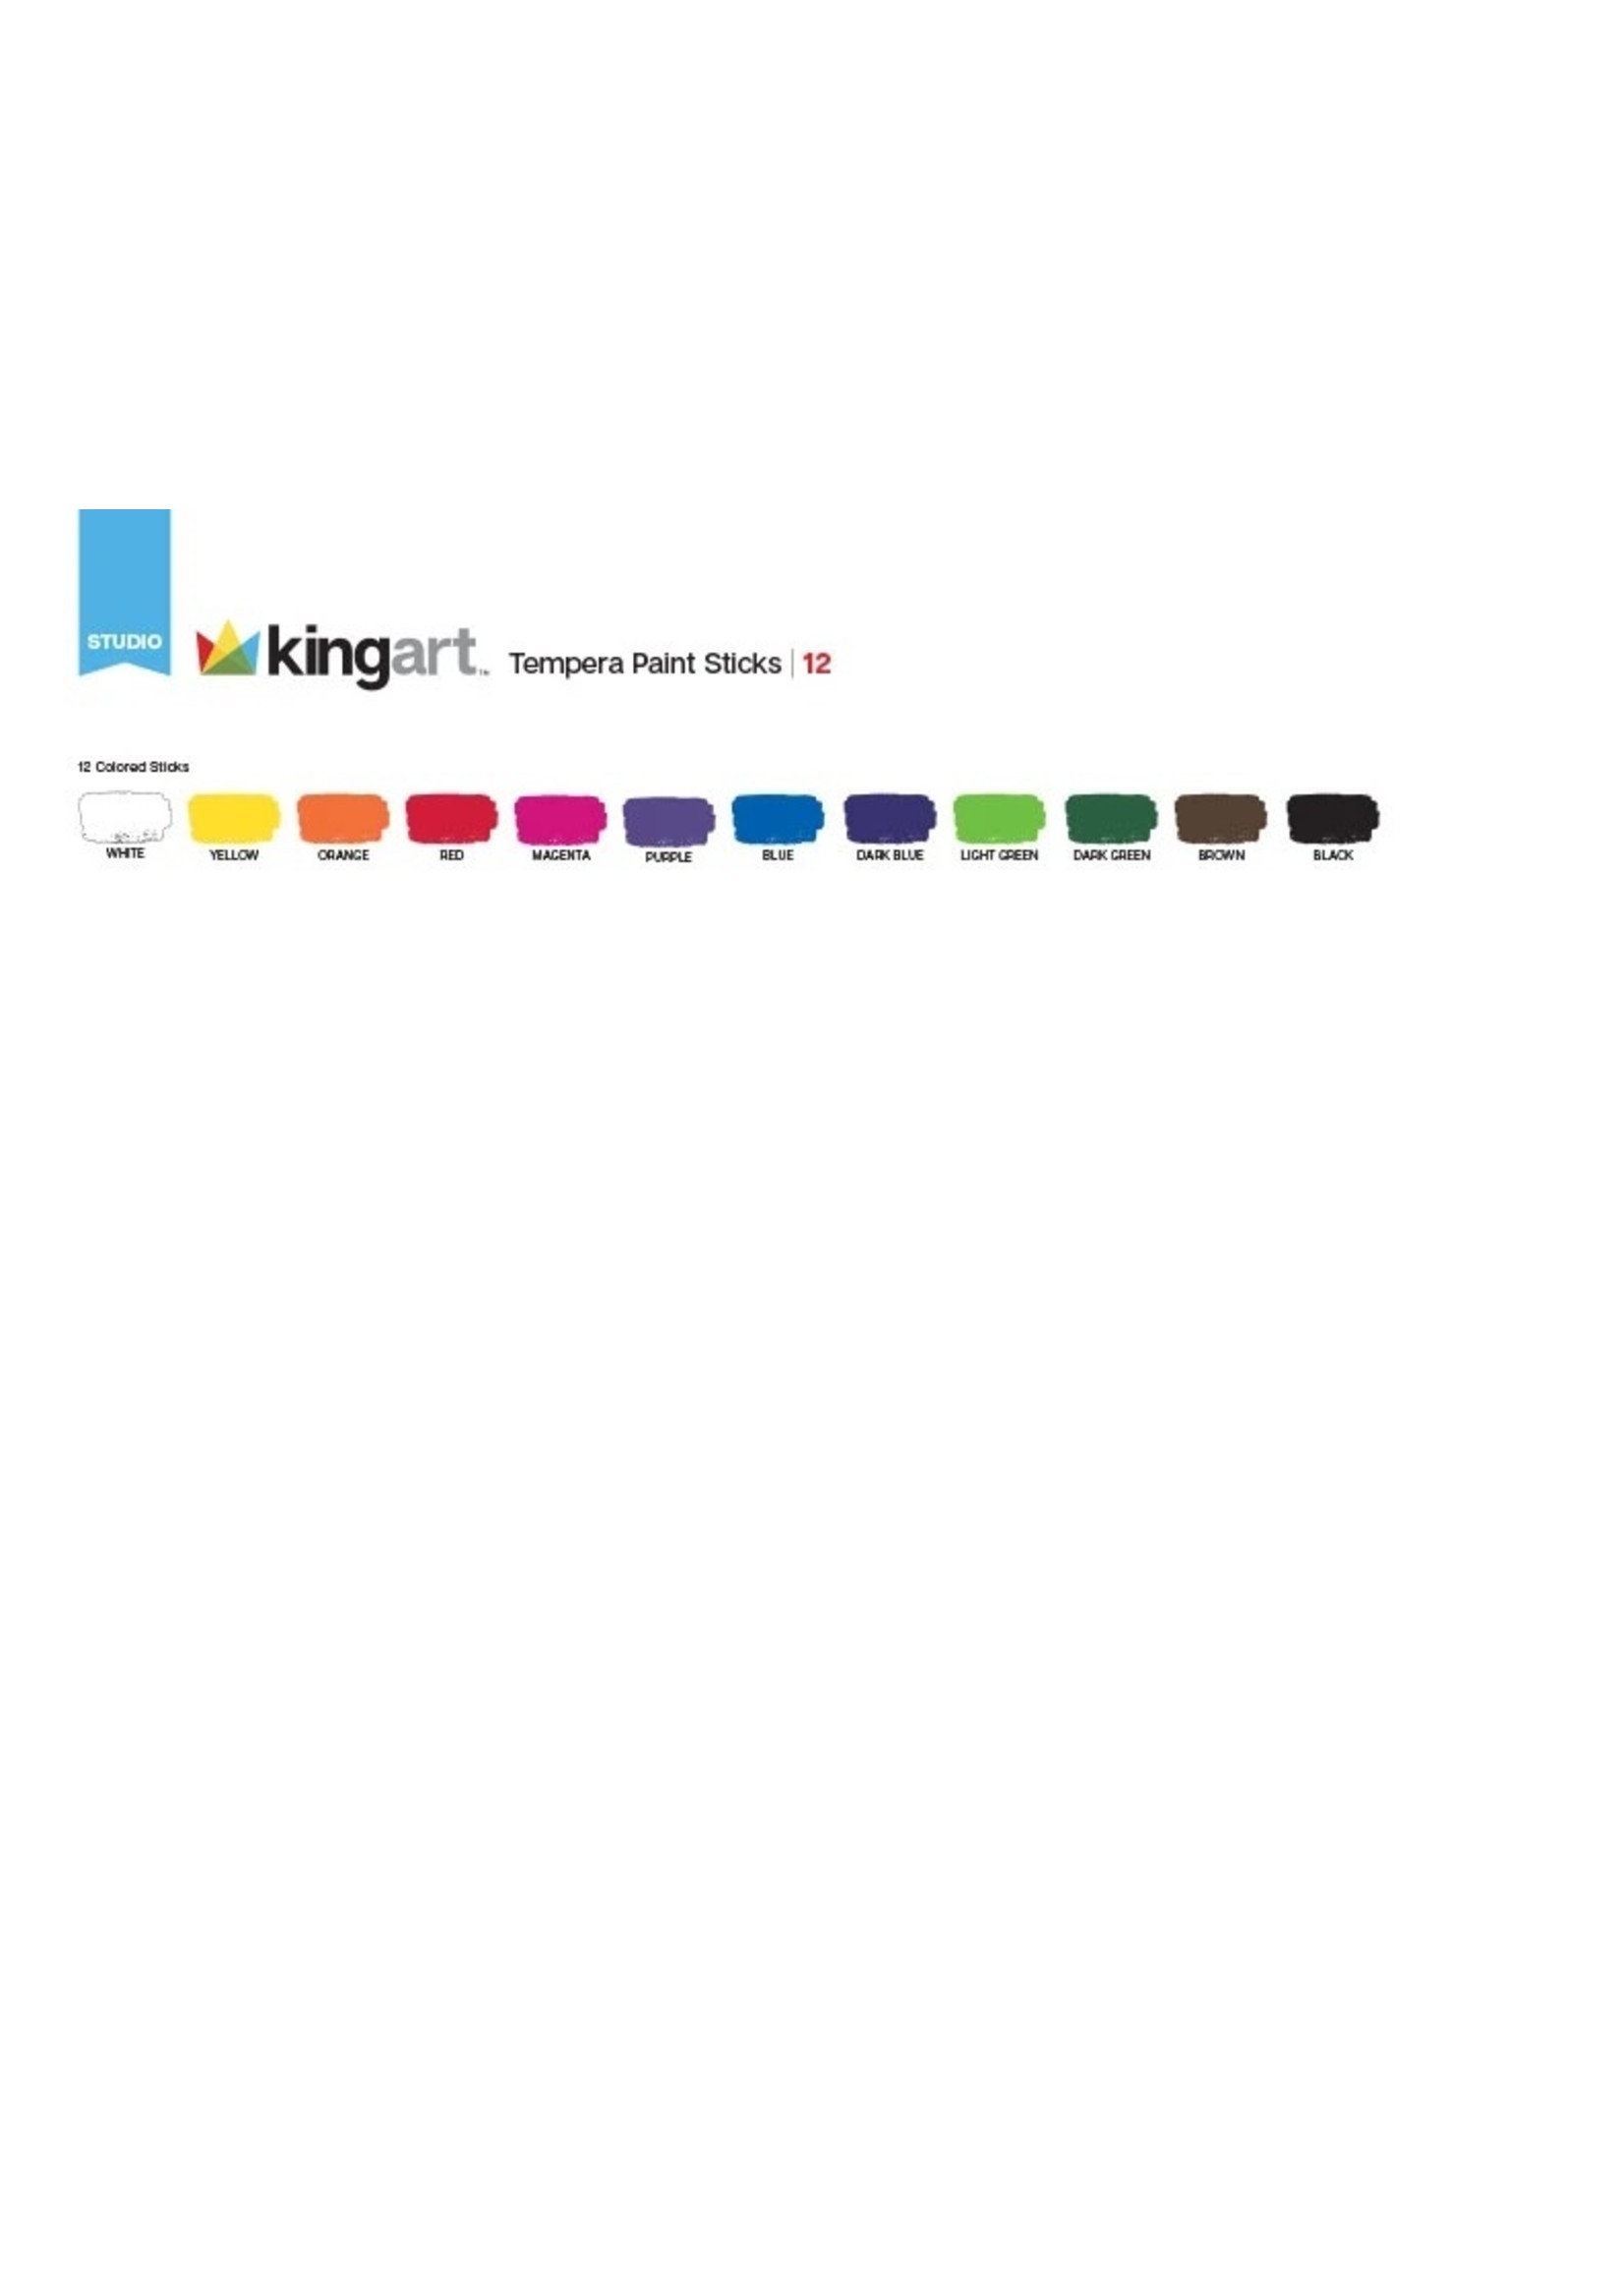 Kingart Tempera Paint Sticks - 12 Unique Colors